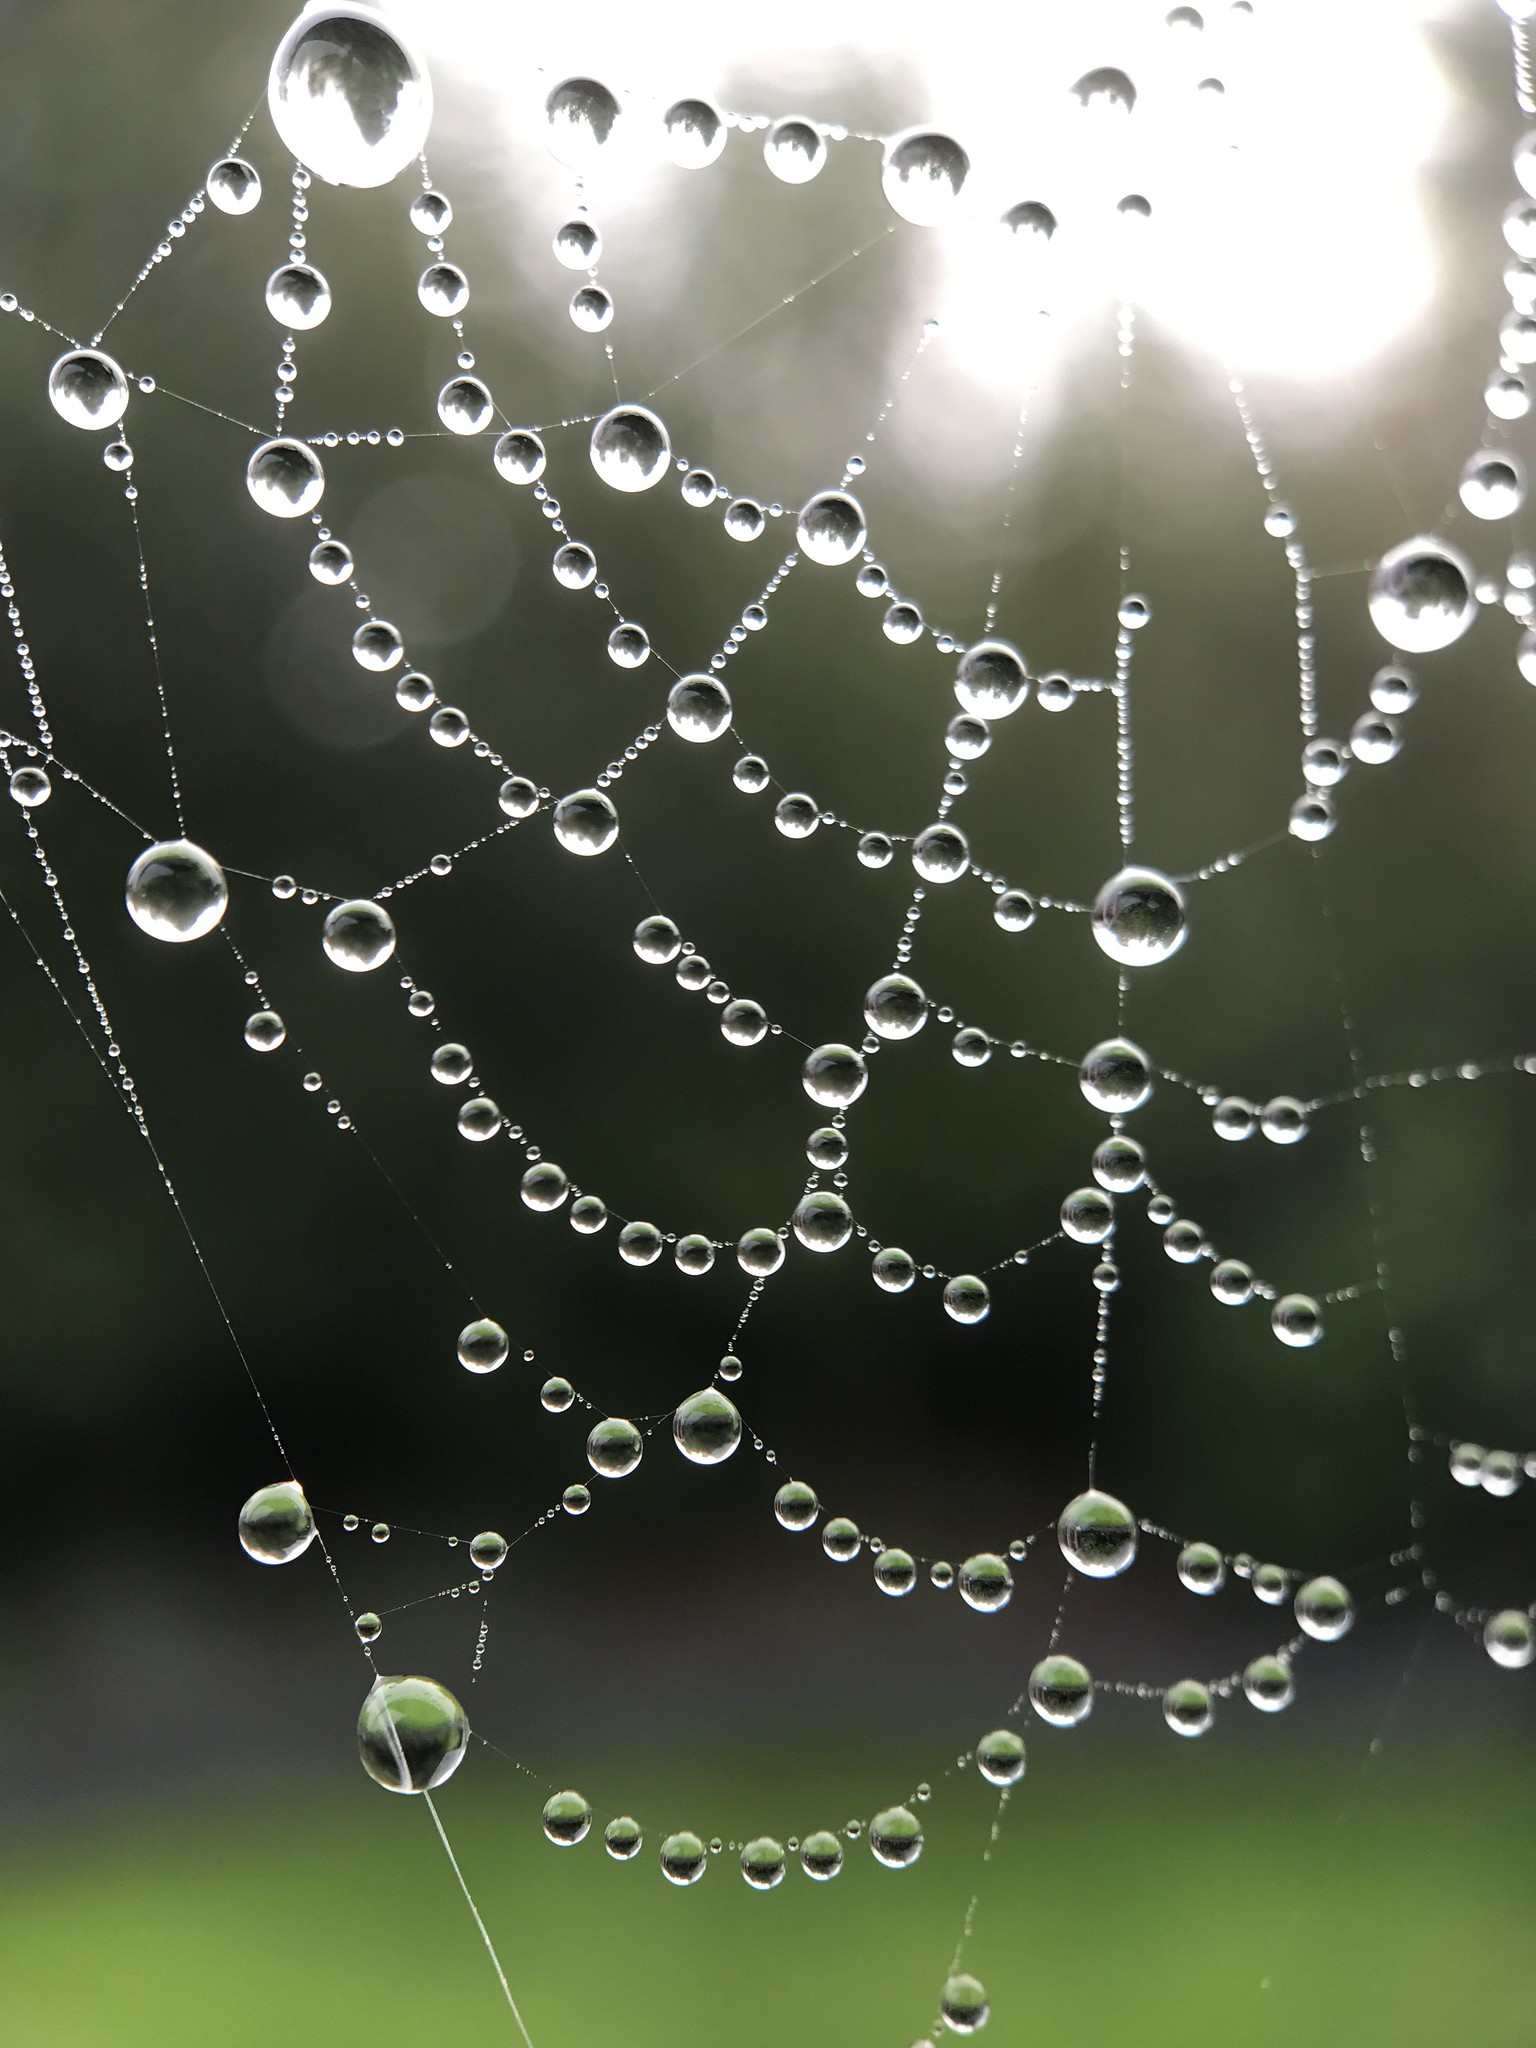 Dauwdruppels in een spinneweb